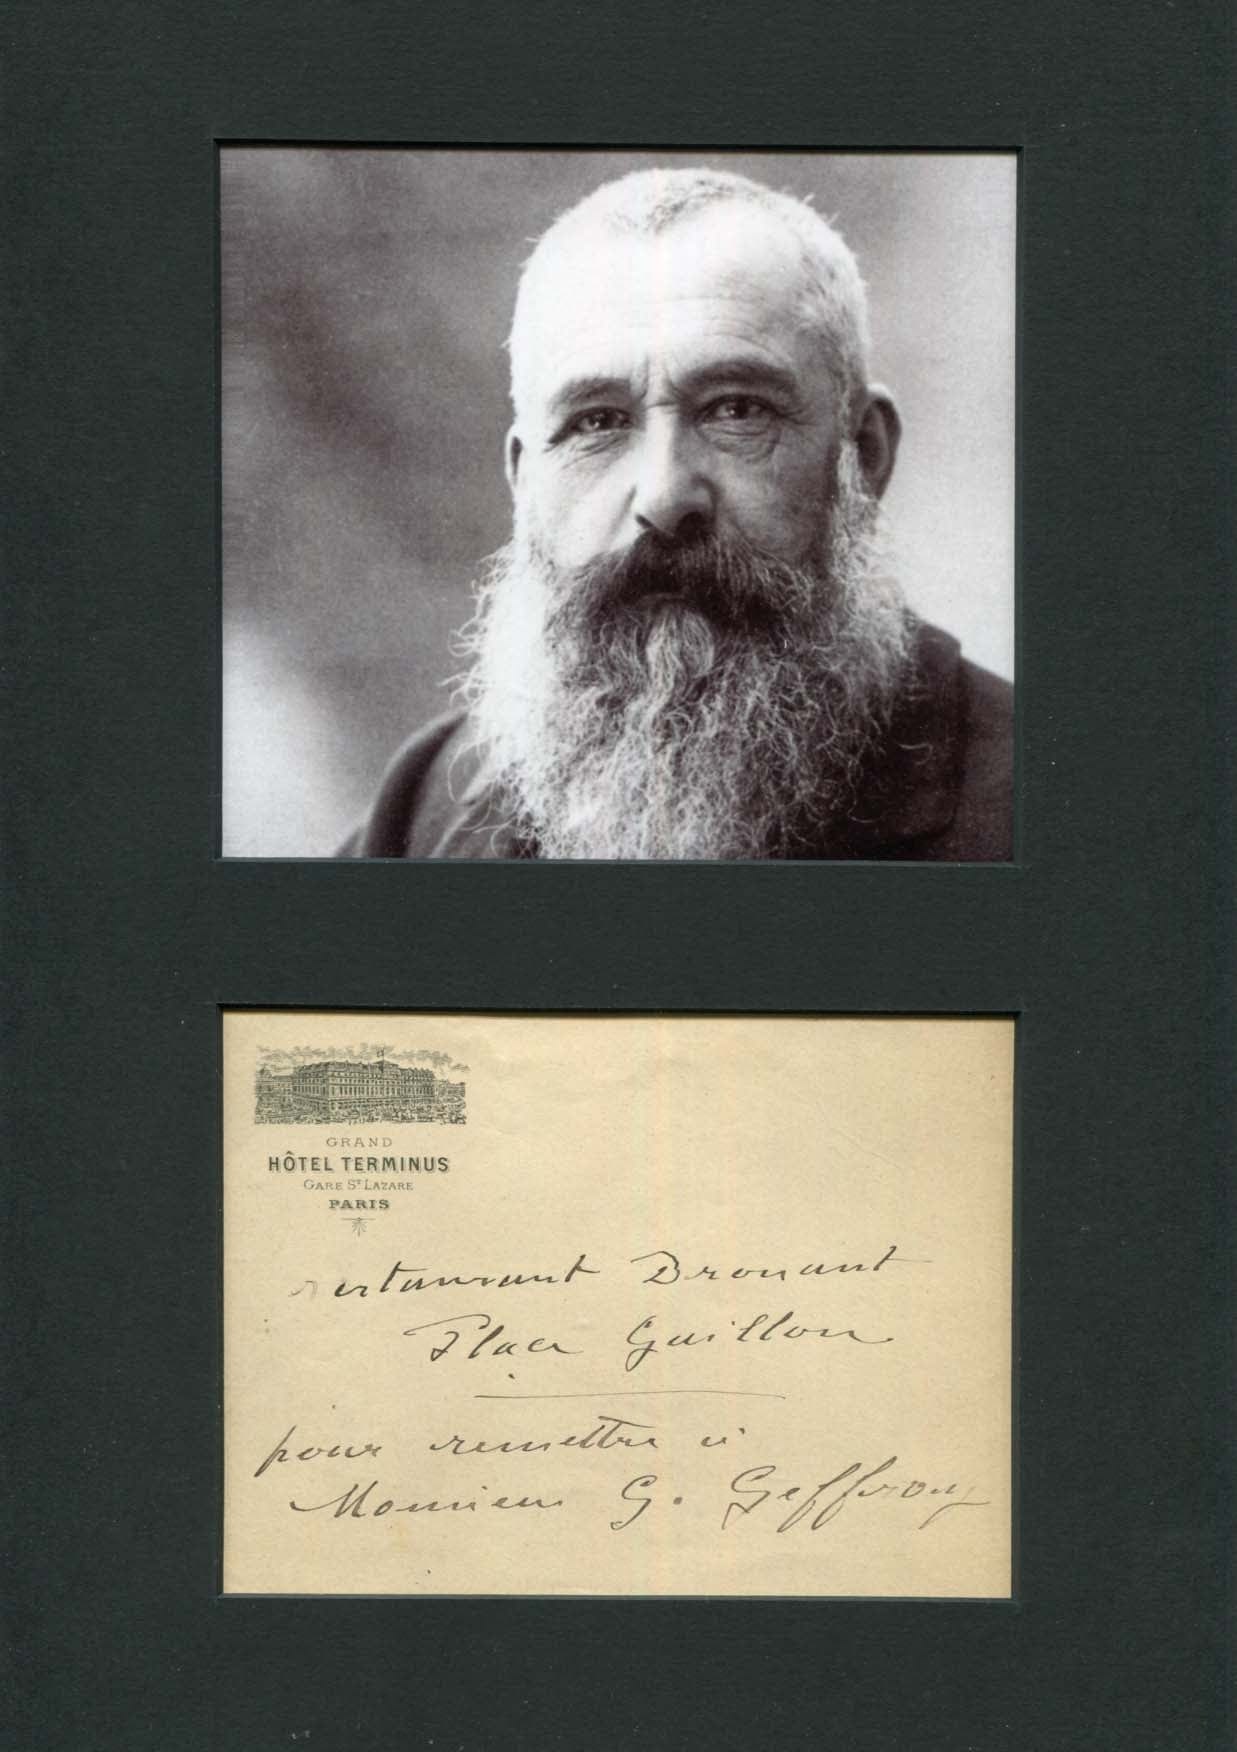 Claude Monet Autograph Autogramm | ID 7563829149845